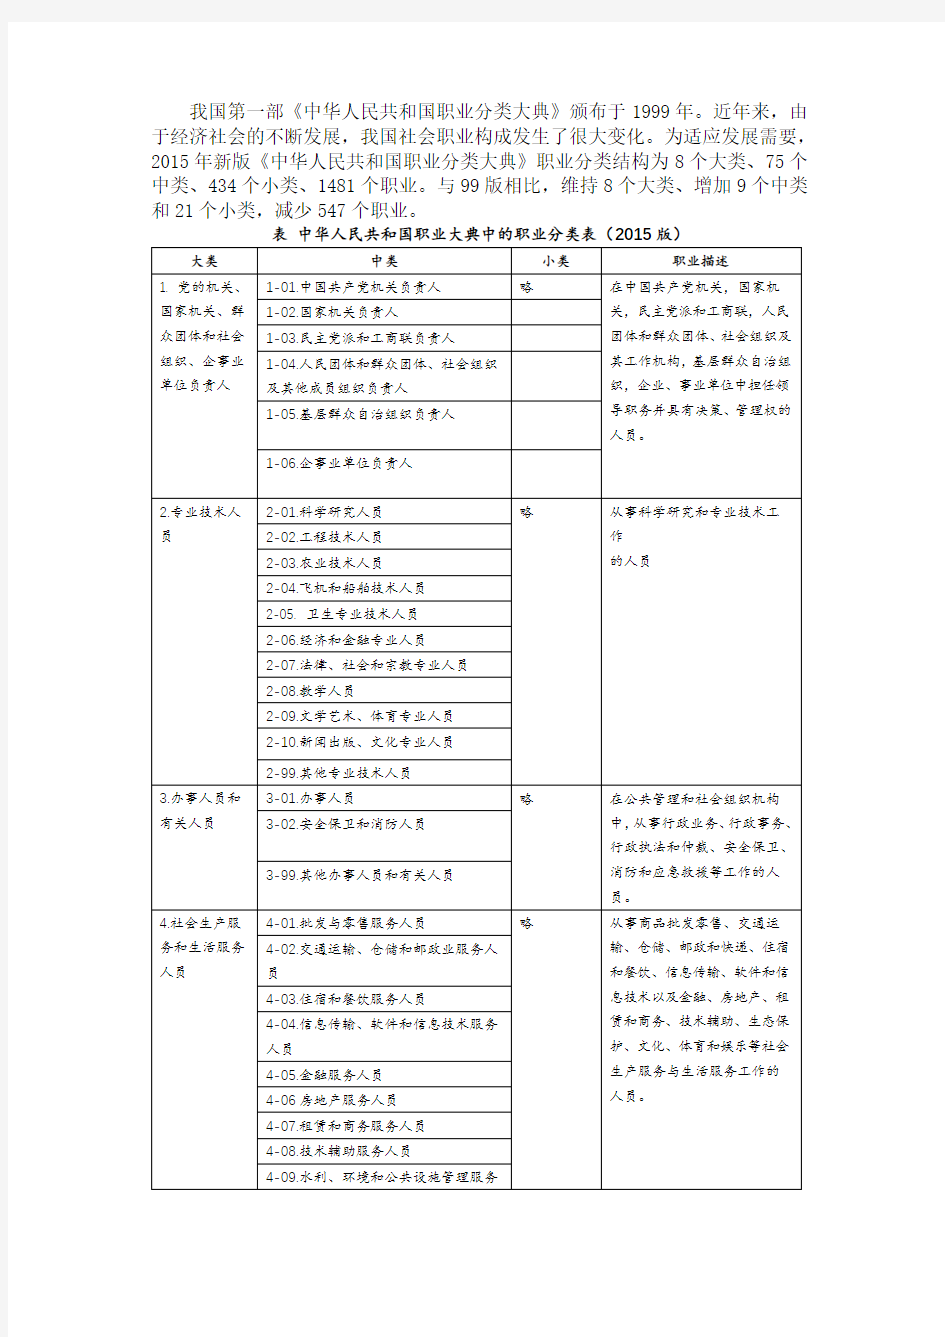 新版《中华人民共和国职业分类大典》